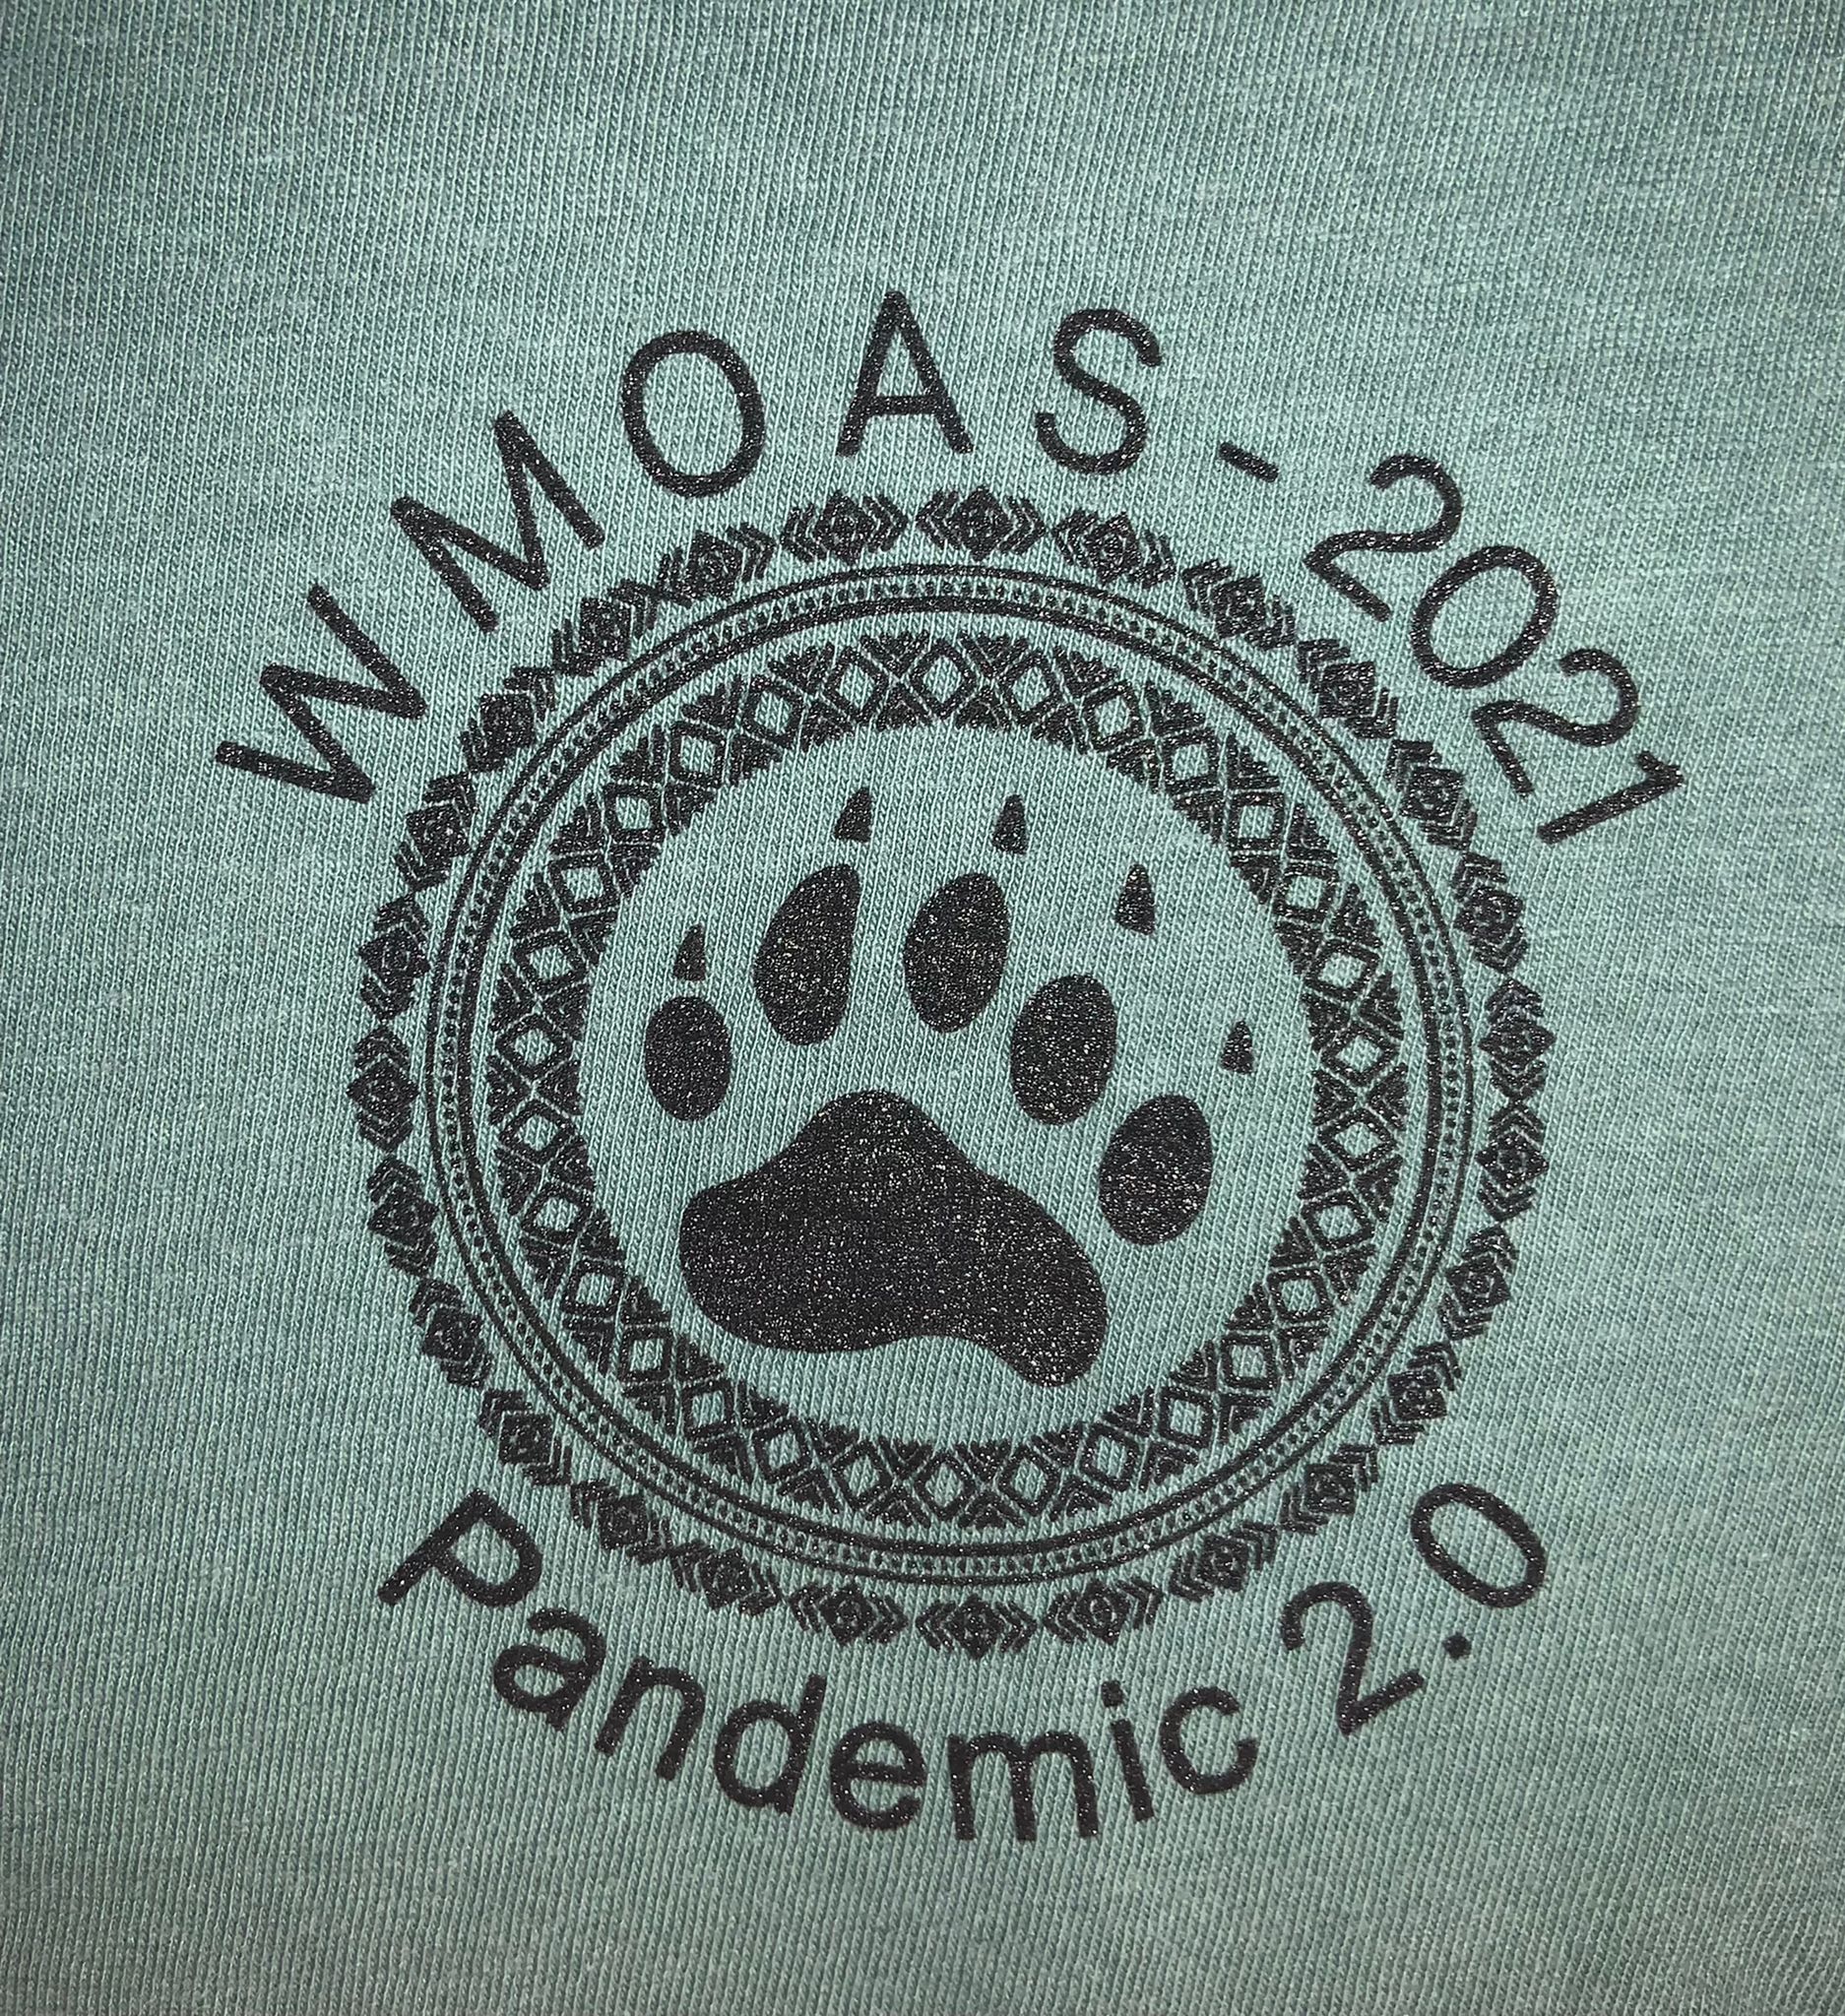 WMOAS 20.1